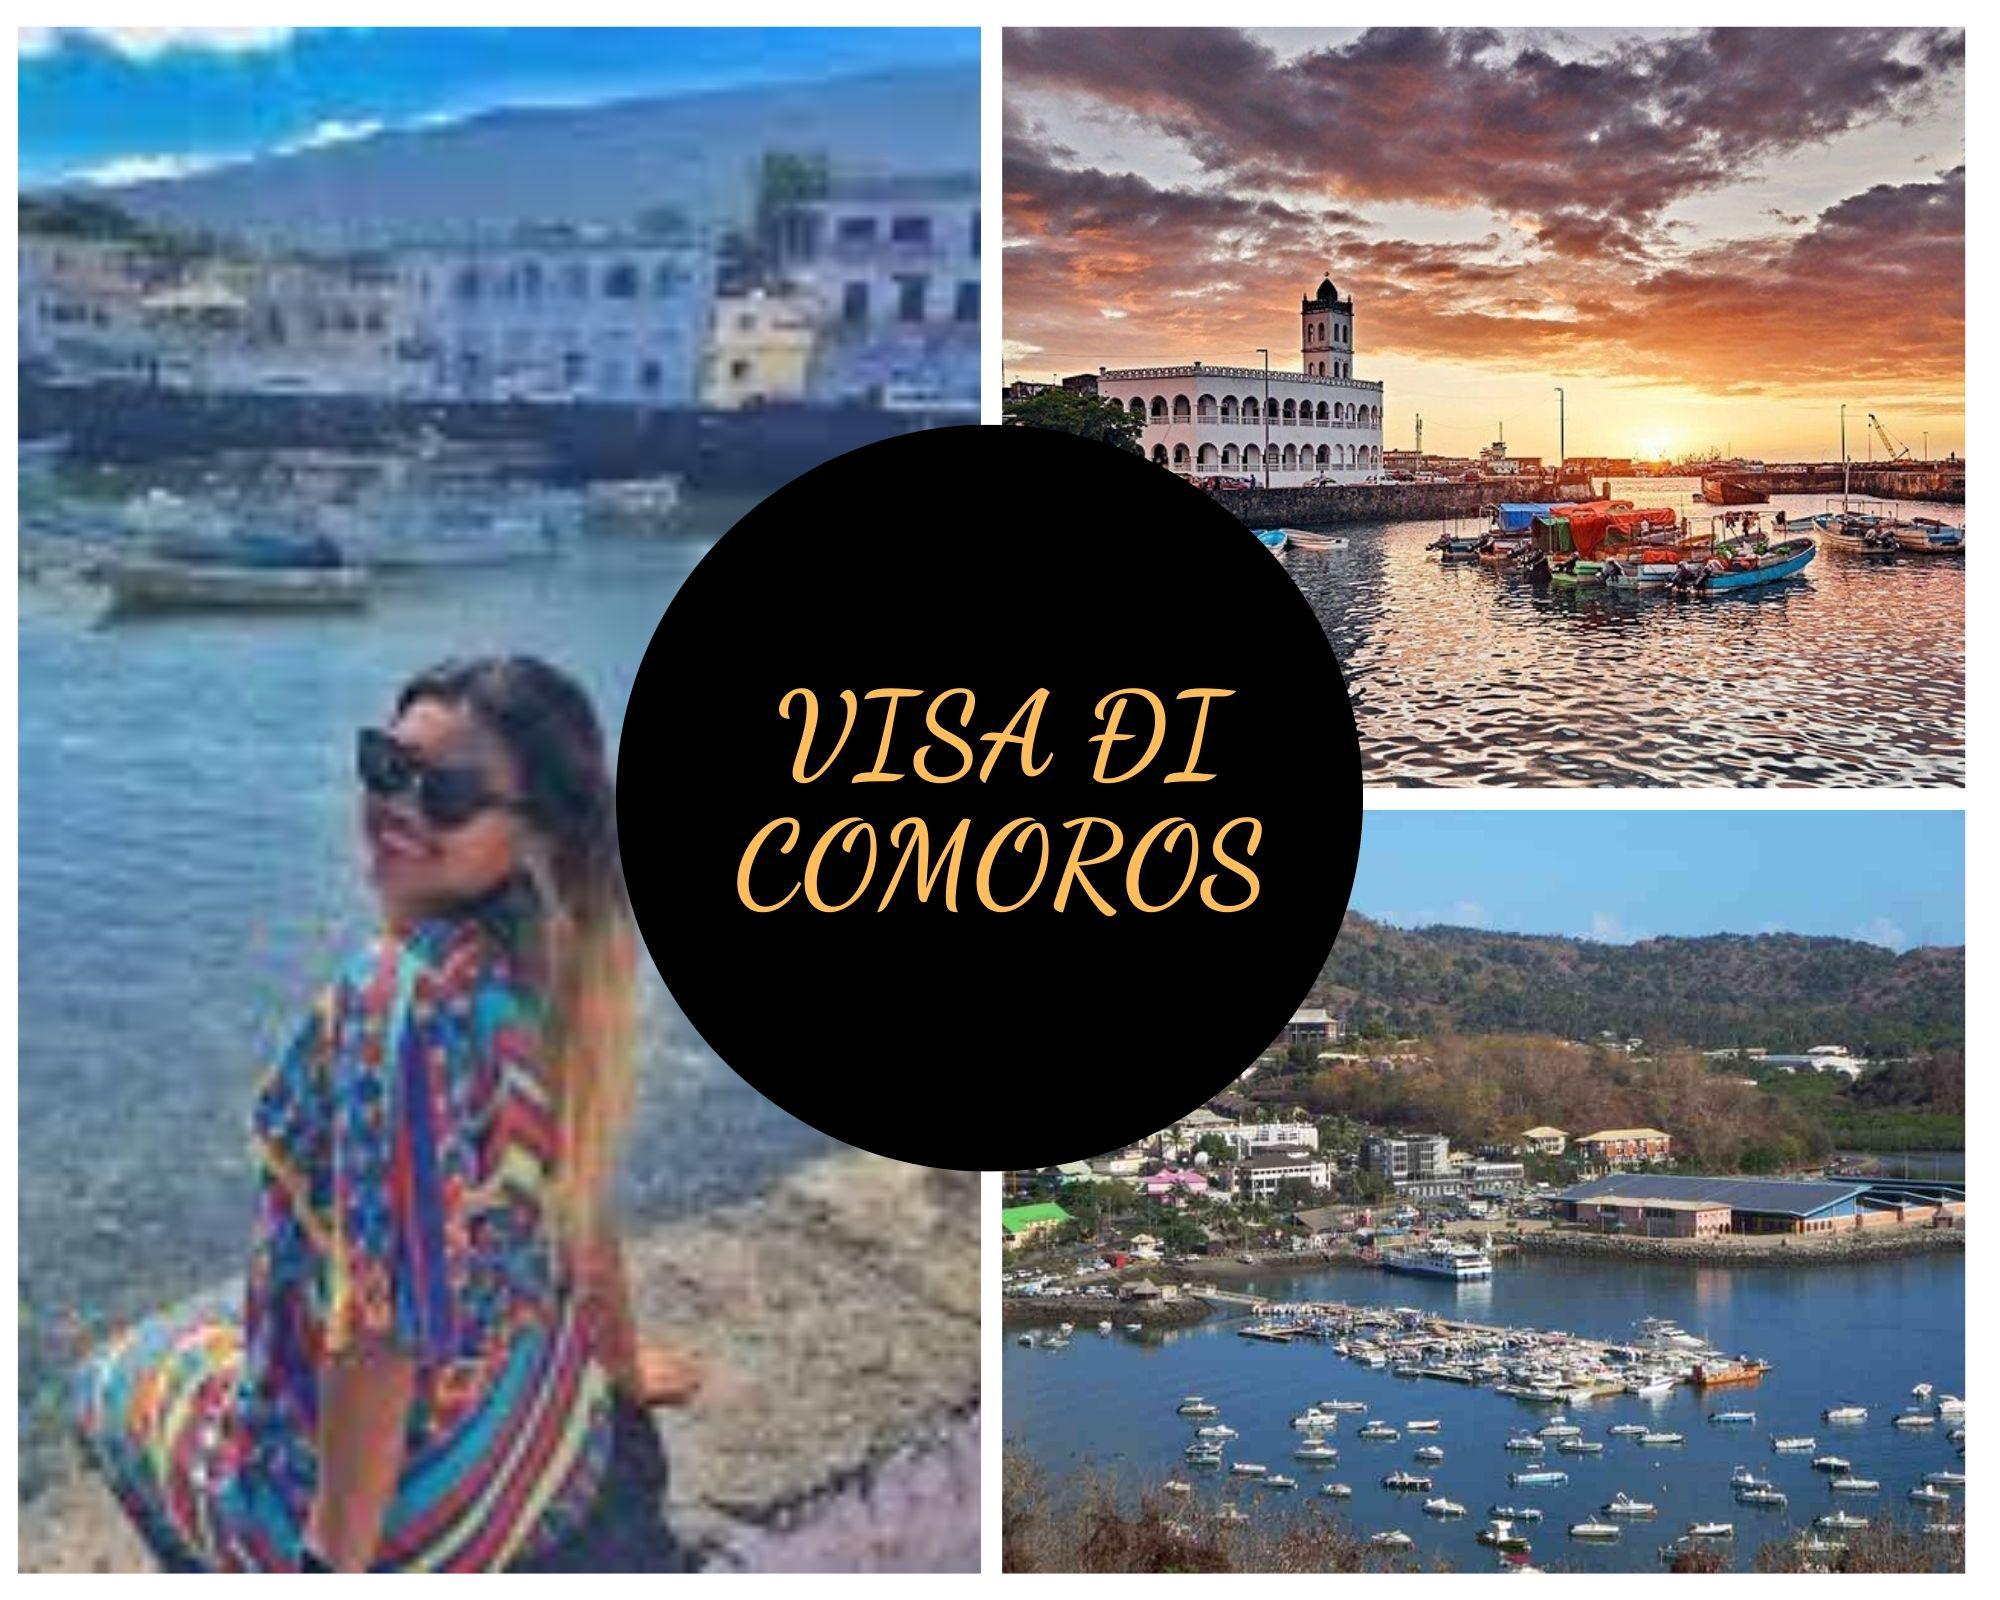 Làm Visa du lịch Comoros uy tín, trọn gói, giá rẻ